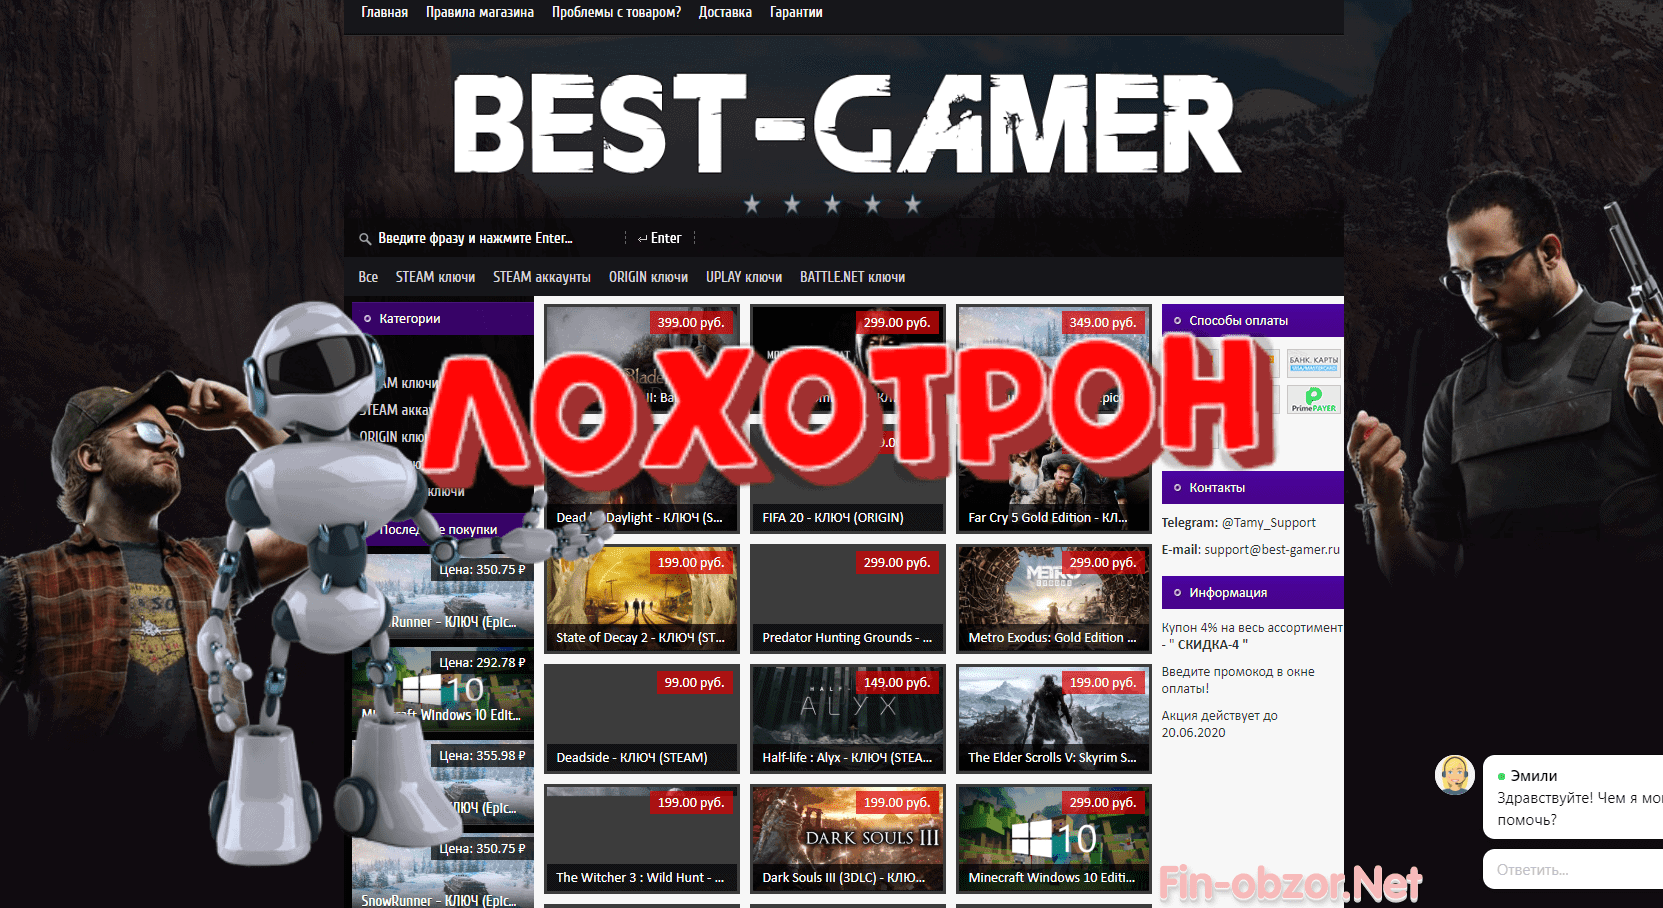 Best Gamer (best-gamer.ru) - отзывы и проверка. Магазин аккаунтов